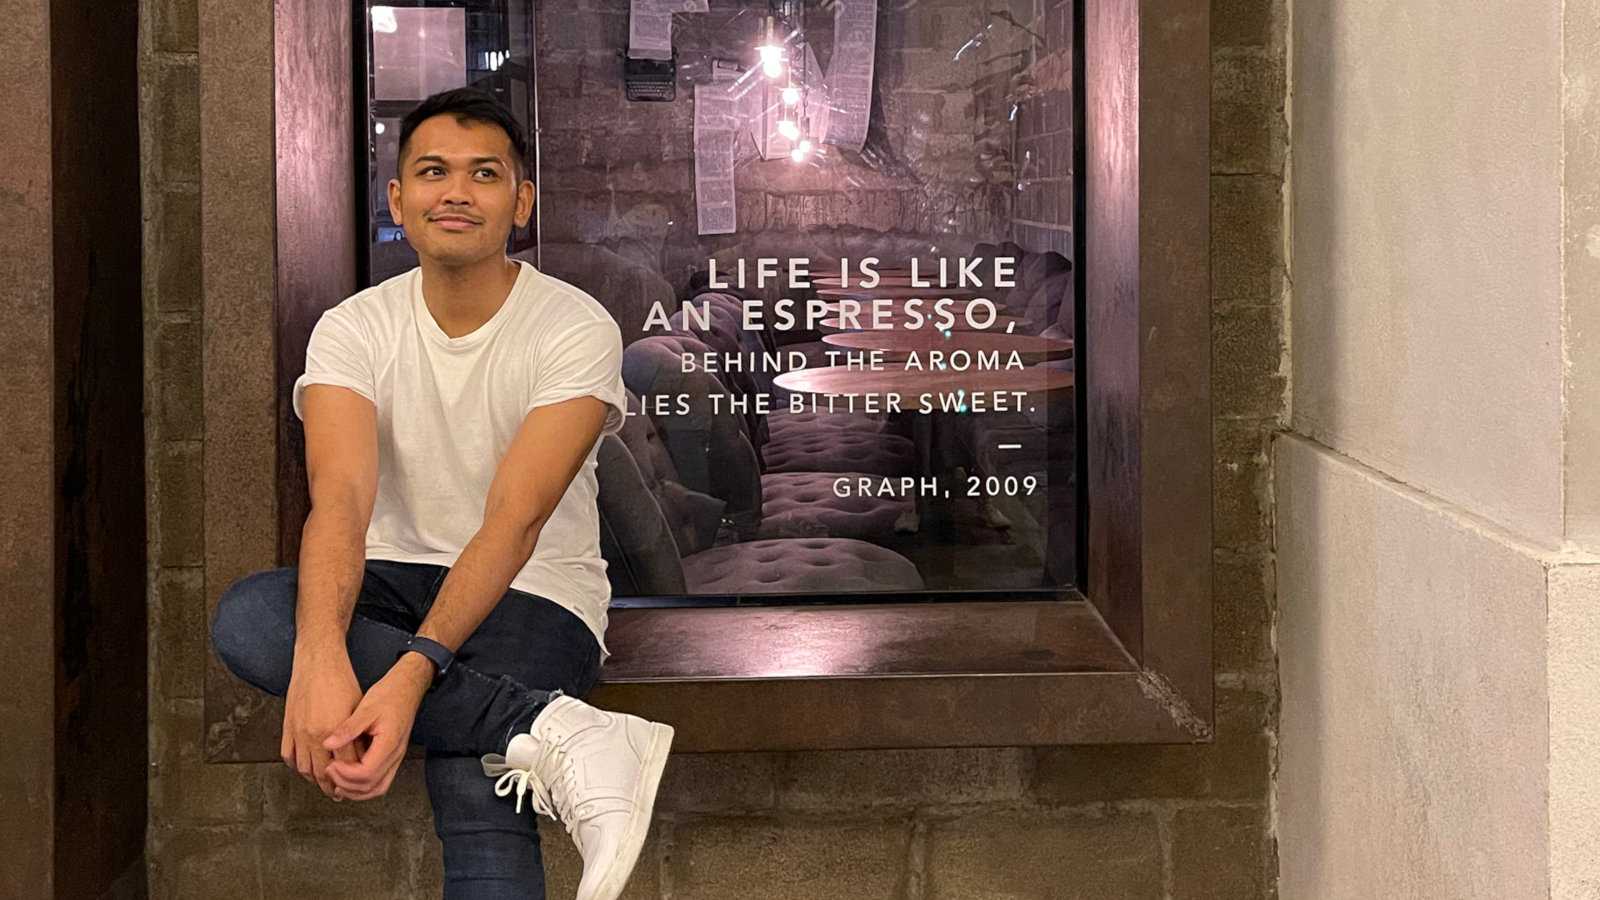 Scott da Tailândia está compartilhando sua história de sua primeira vez / beijo / ligação gay